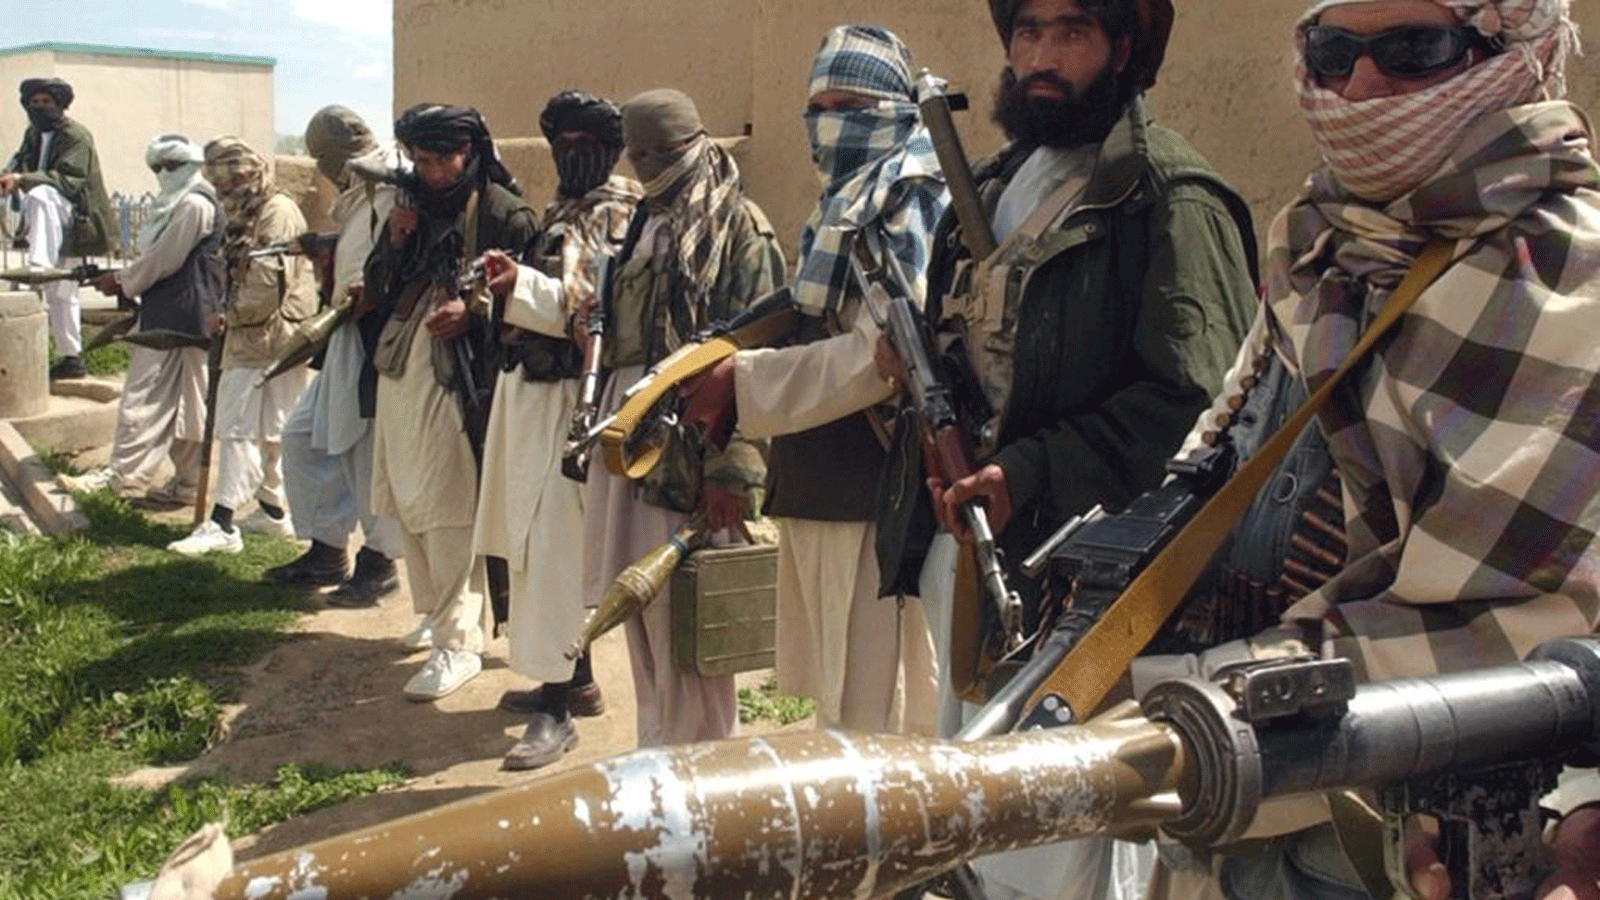 مقاتلو طالبان في طابور يحملون بنادق ومتفجرات(صورة أرشيفية)